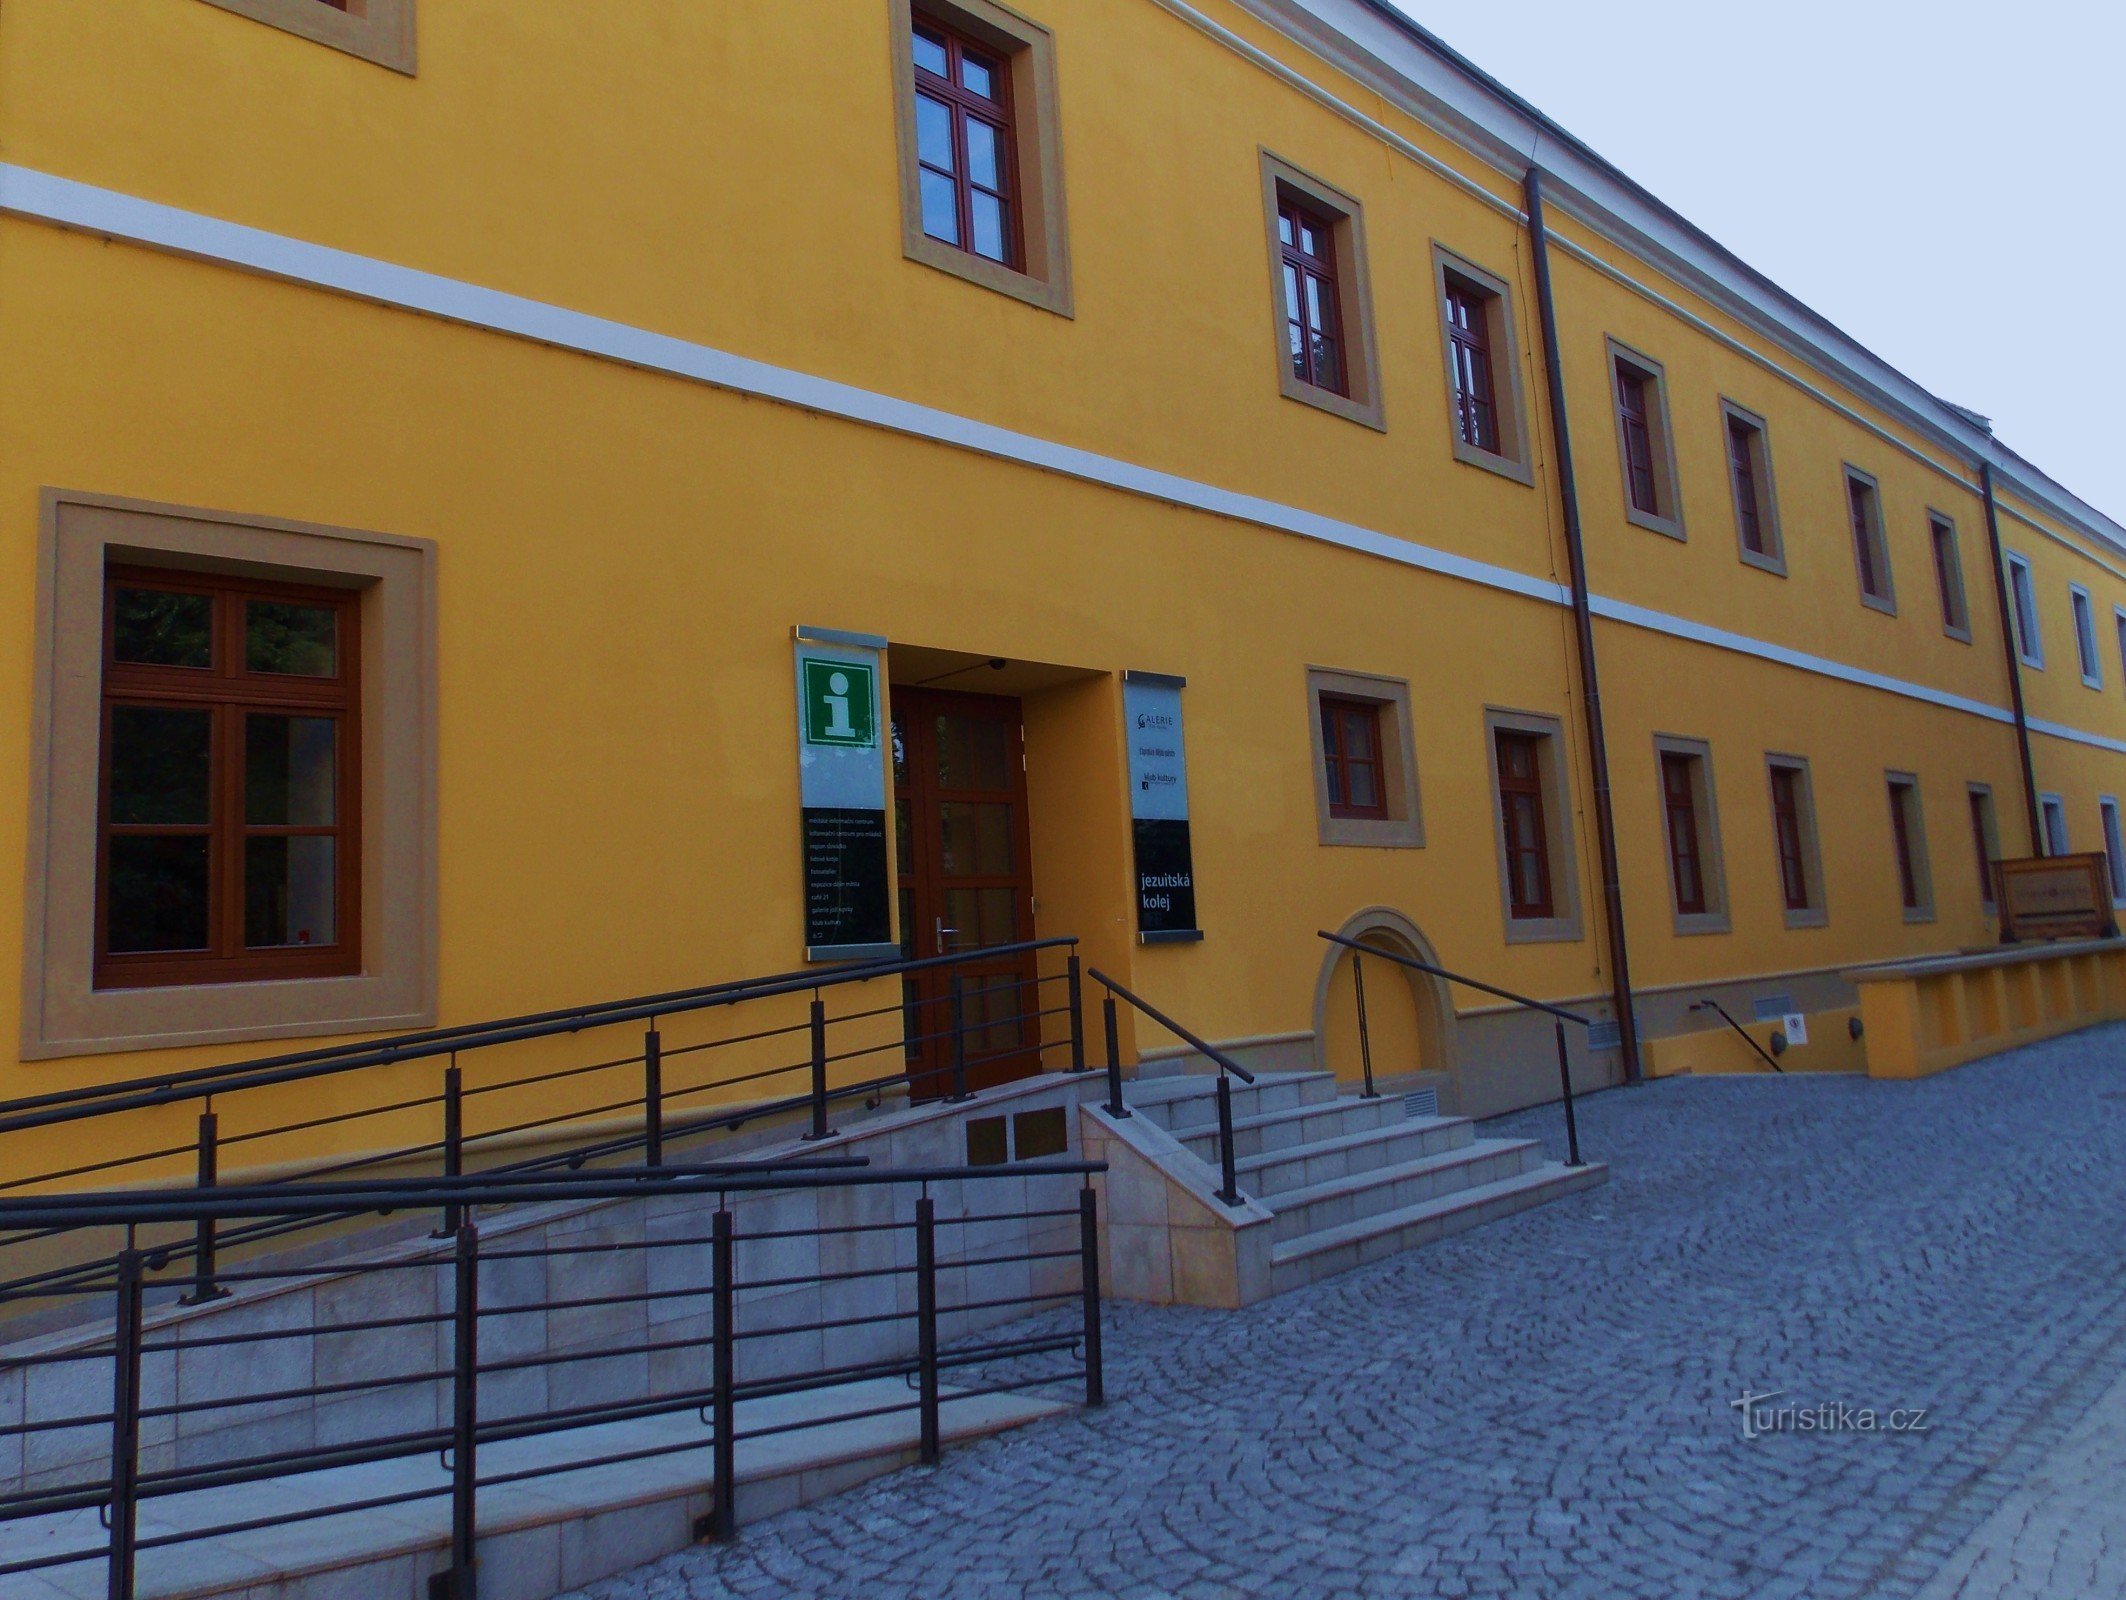 Σλοβακικό Κέντρο Πολιτισμού και Παραδόσεων στο Uh. Hradišti